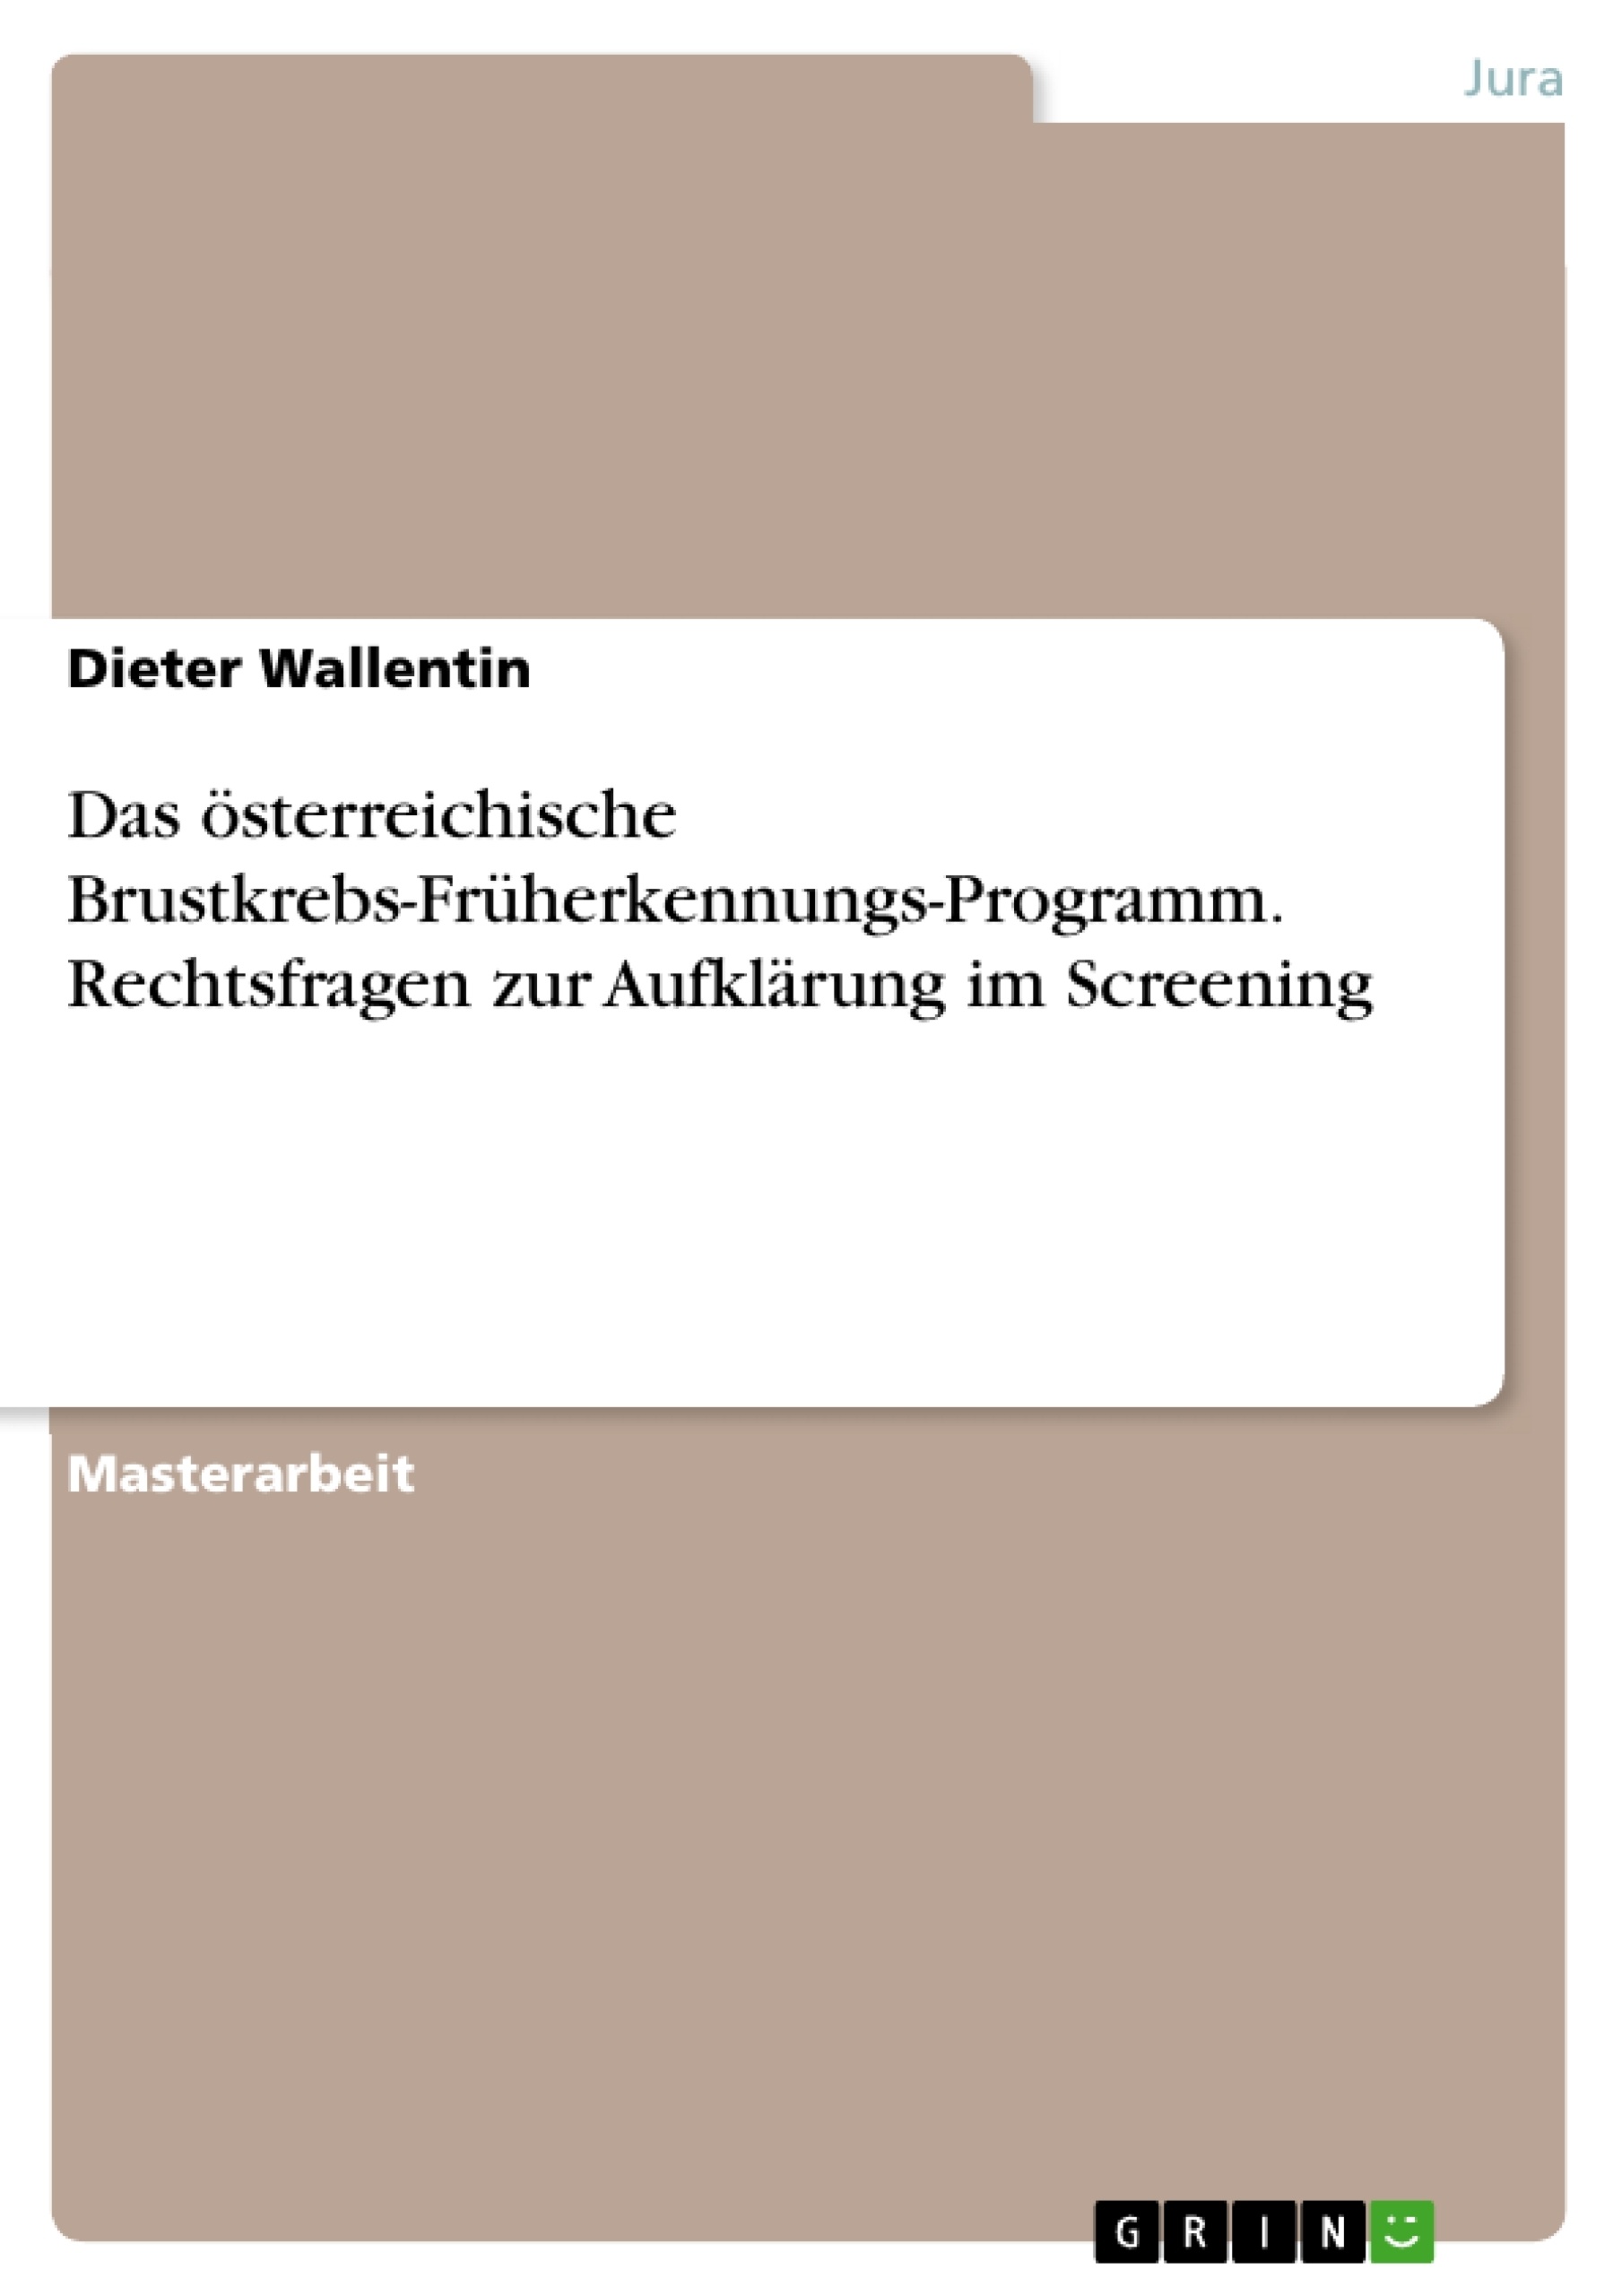 Título: Das österreichische Brustkrebs-Früherkennungs-Programm. Rechtsfragen zur Aufklärung im Screening